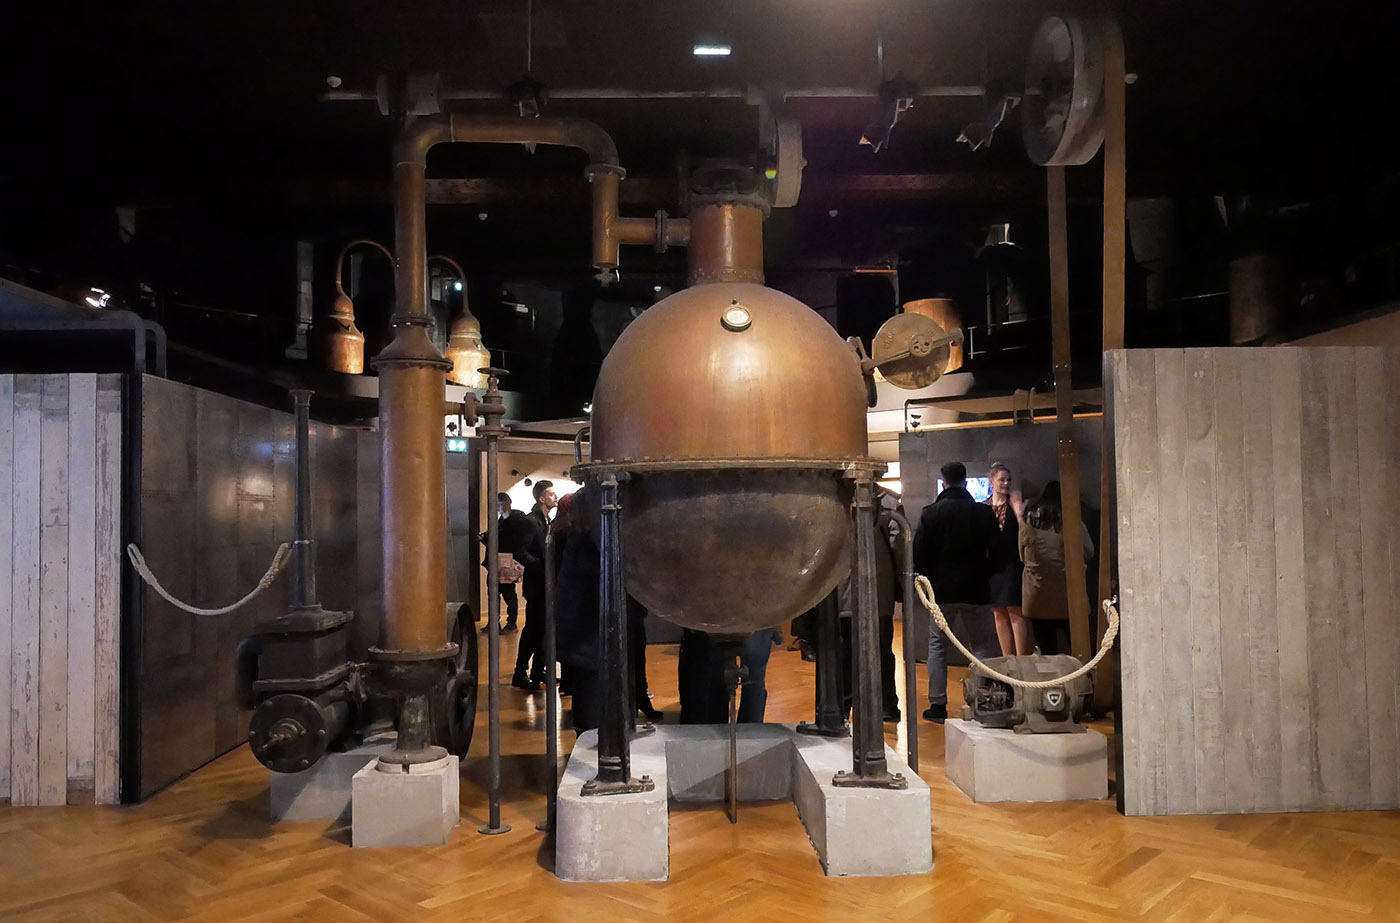 Le musée du Parfum Fragonard pour un voyage olfactif - Saisons de culture